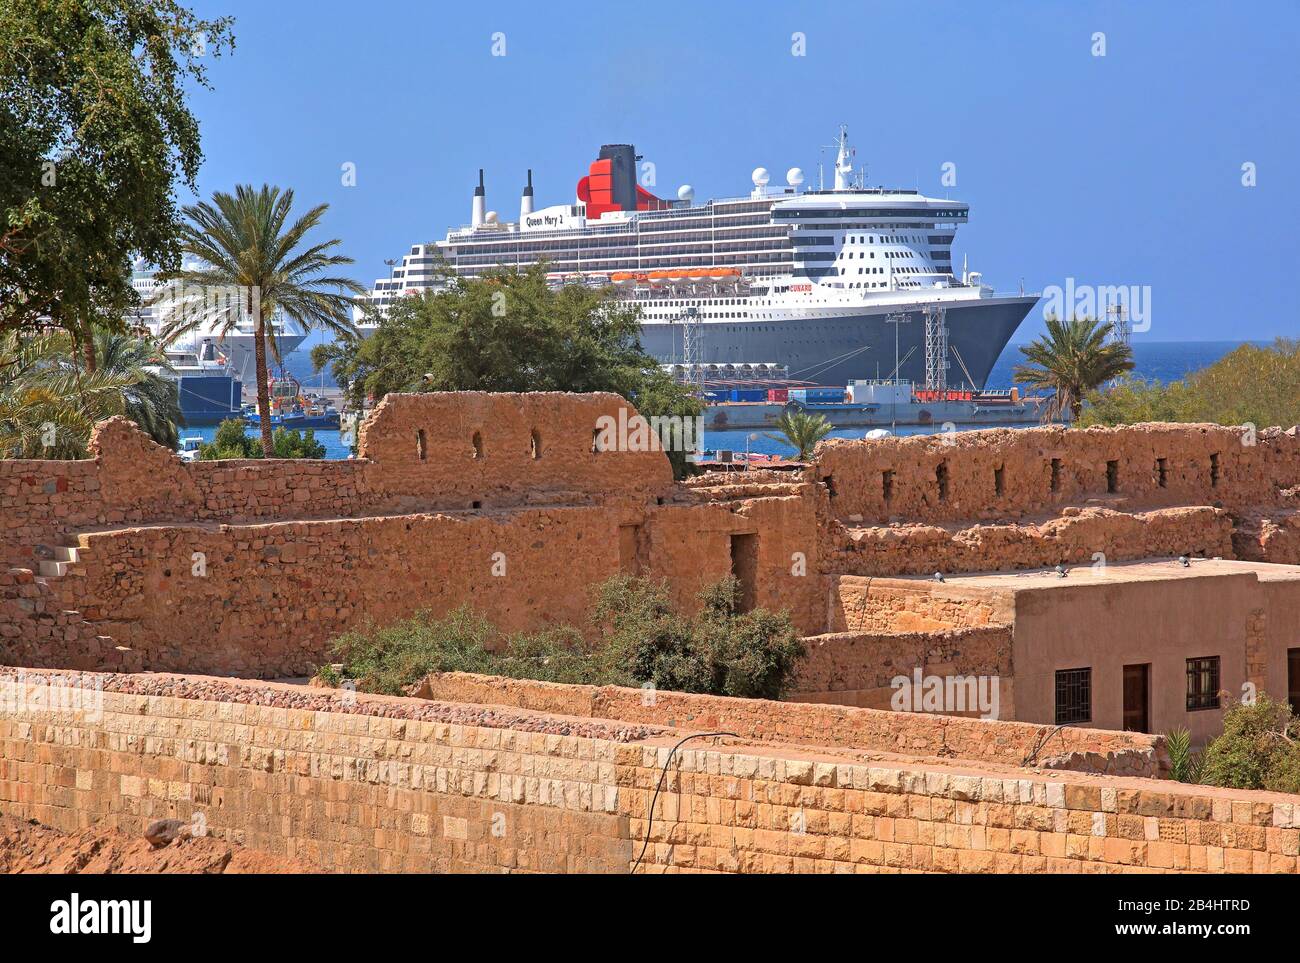 Ruines historiques du fort et bateau de croisière la Reine Marie 2 dans le port Akaba Aqaba, Golfe d'Aqaba, Mer Rouge, Jordanie Banque D'Images